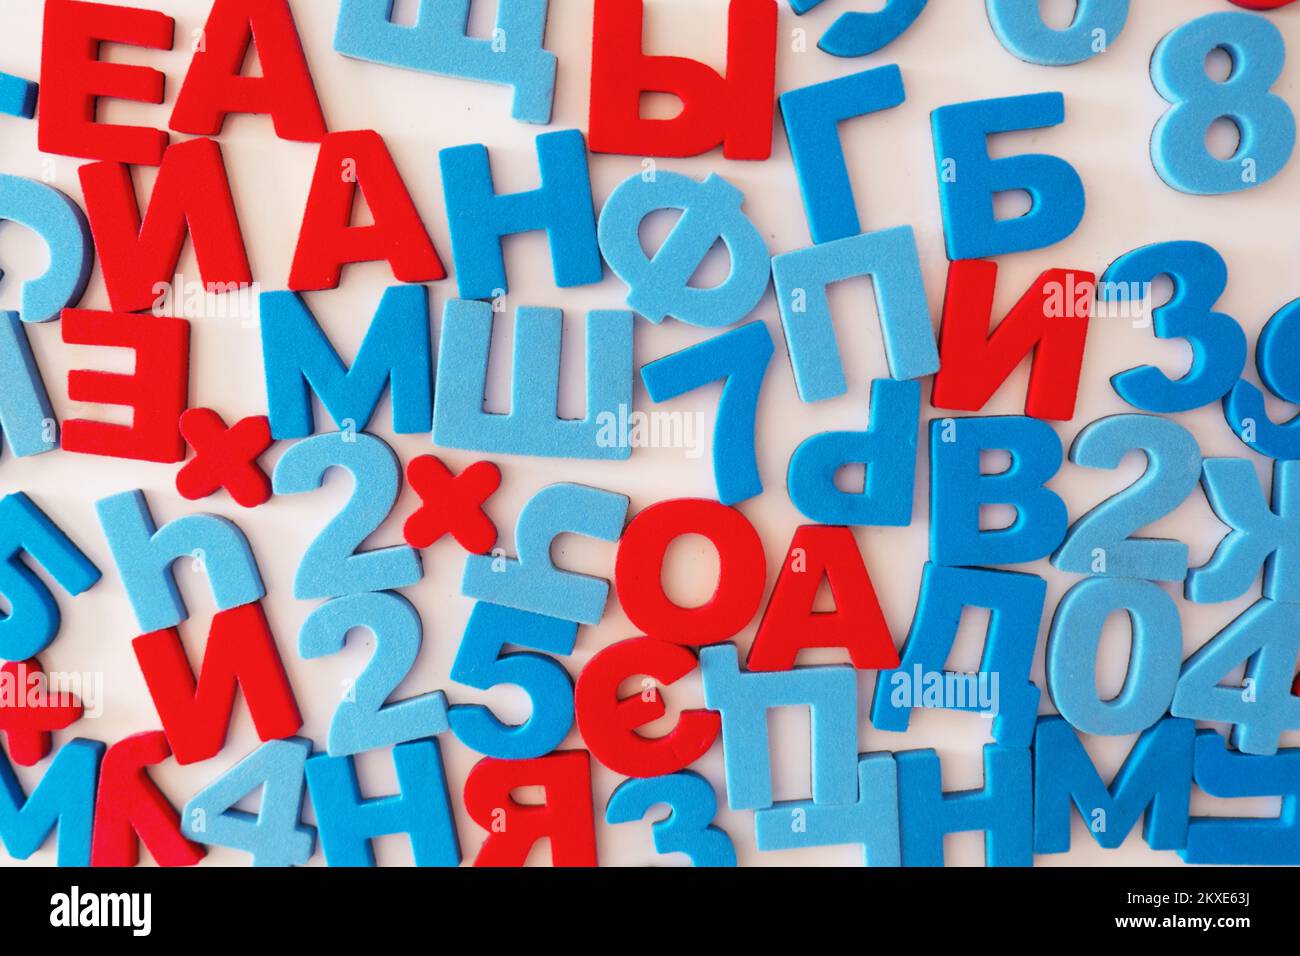 Lettere e numeri russi. Vocali rosse e consonanti blu su sfondo bianco. Foto di alta qualità. Foto Stock